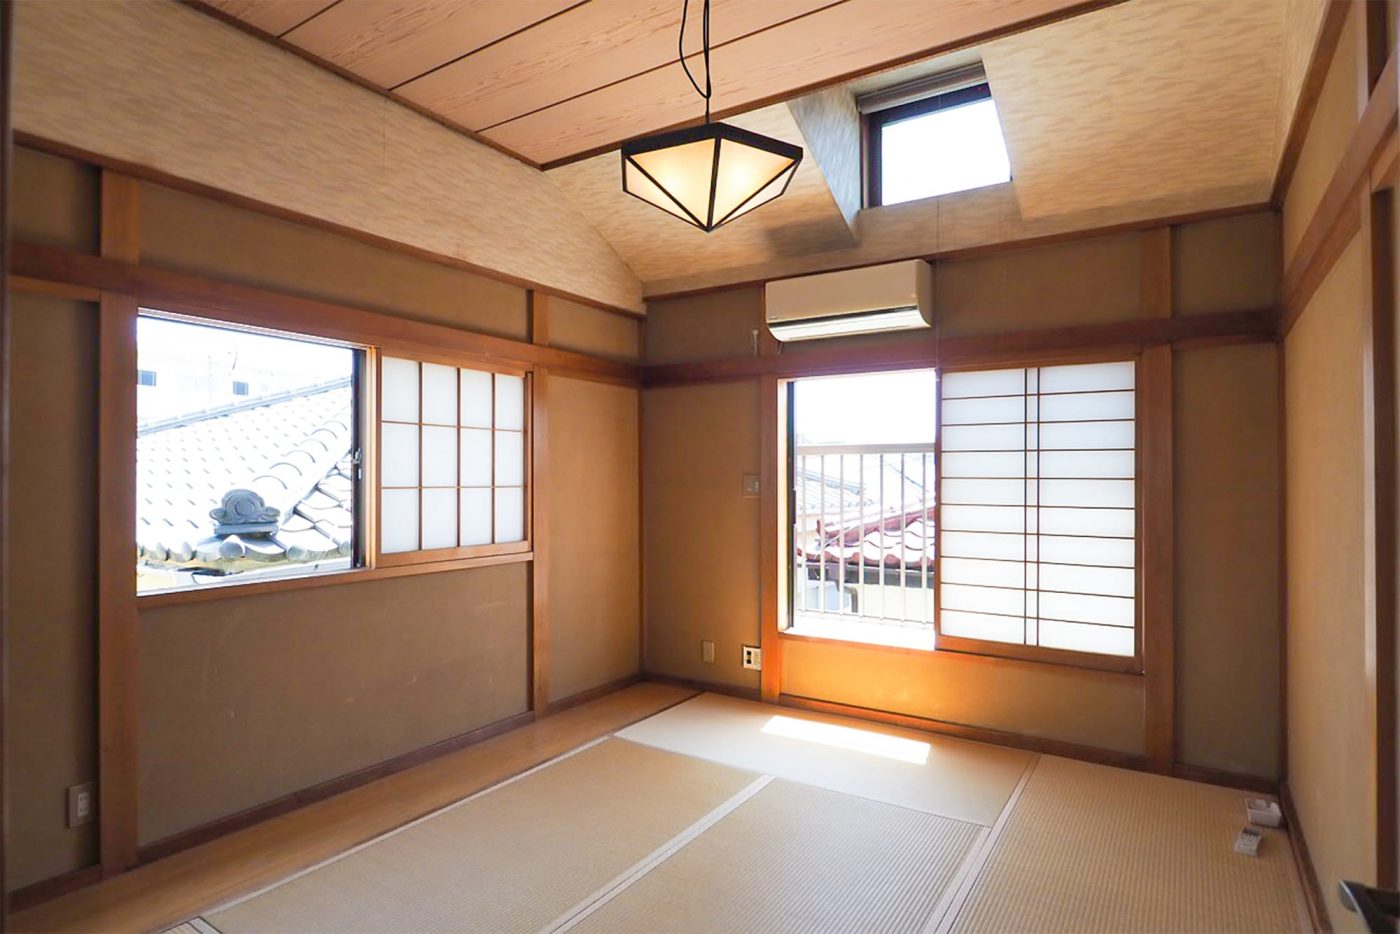 2階にある和室の2部屋は手を入れず、そのままの良さを活かしています。それにしても日当たりの良い空間。居心地の良さが伝わってきます……！